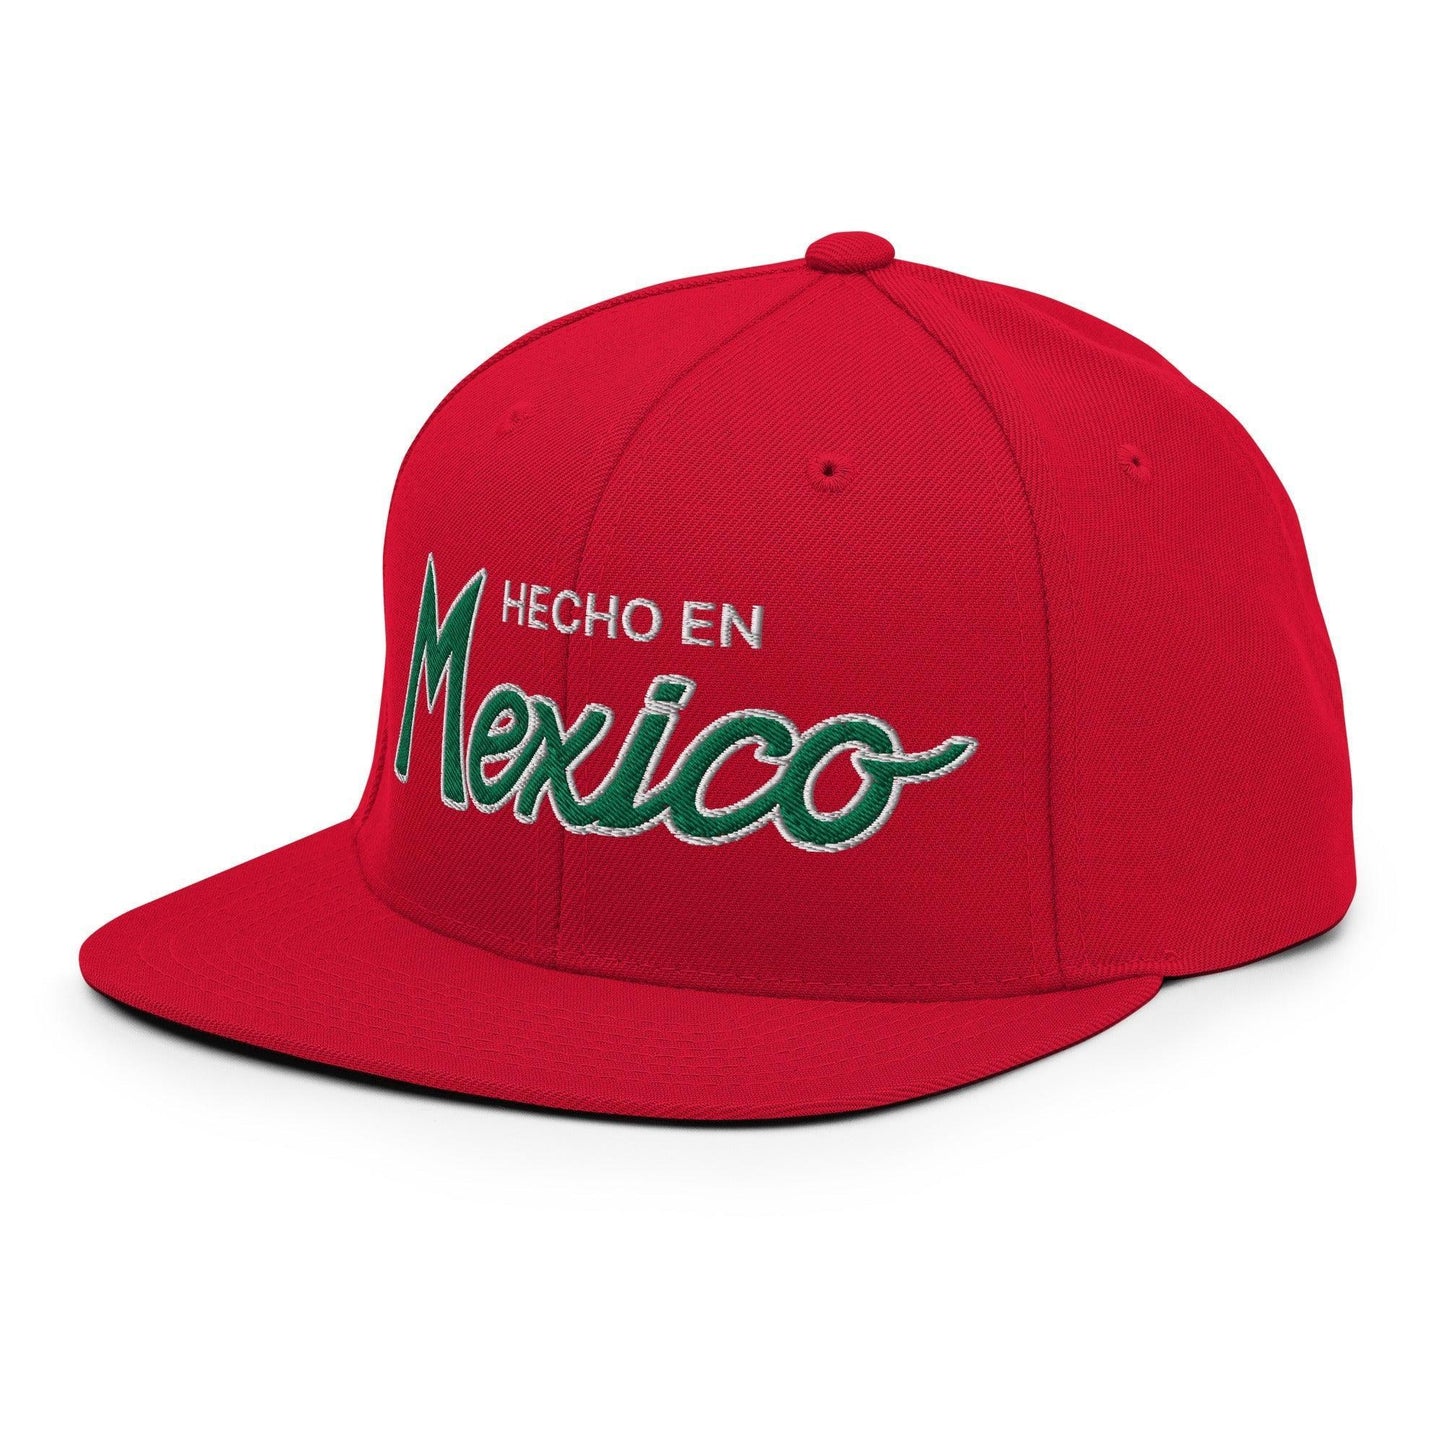 Hecho en Mexico Script Snapback Hat Red by SCRIPT HATS | Script Hats